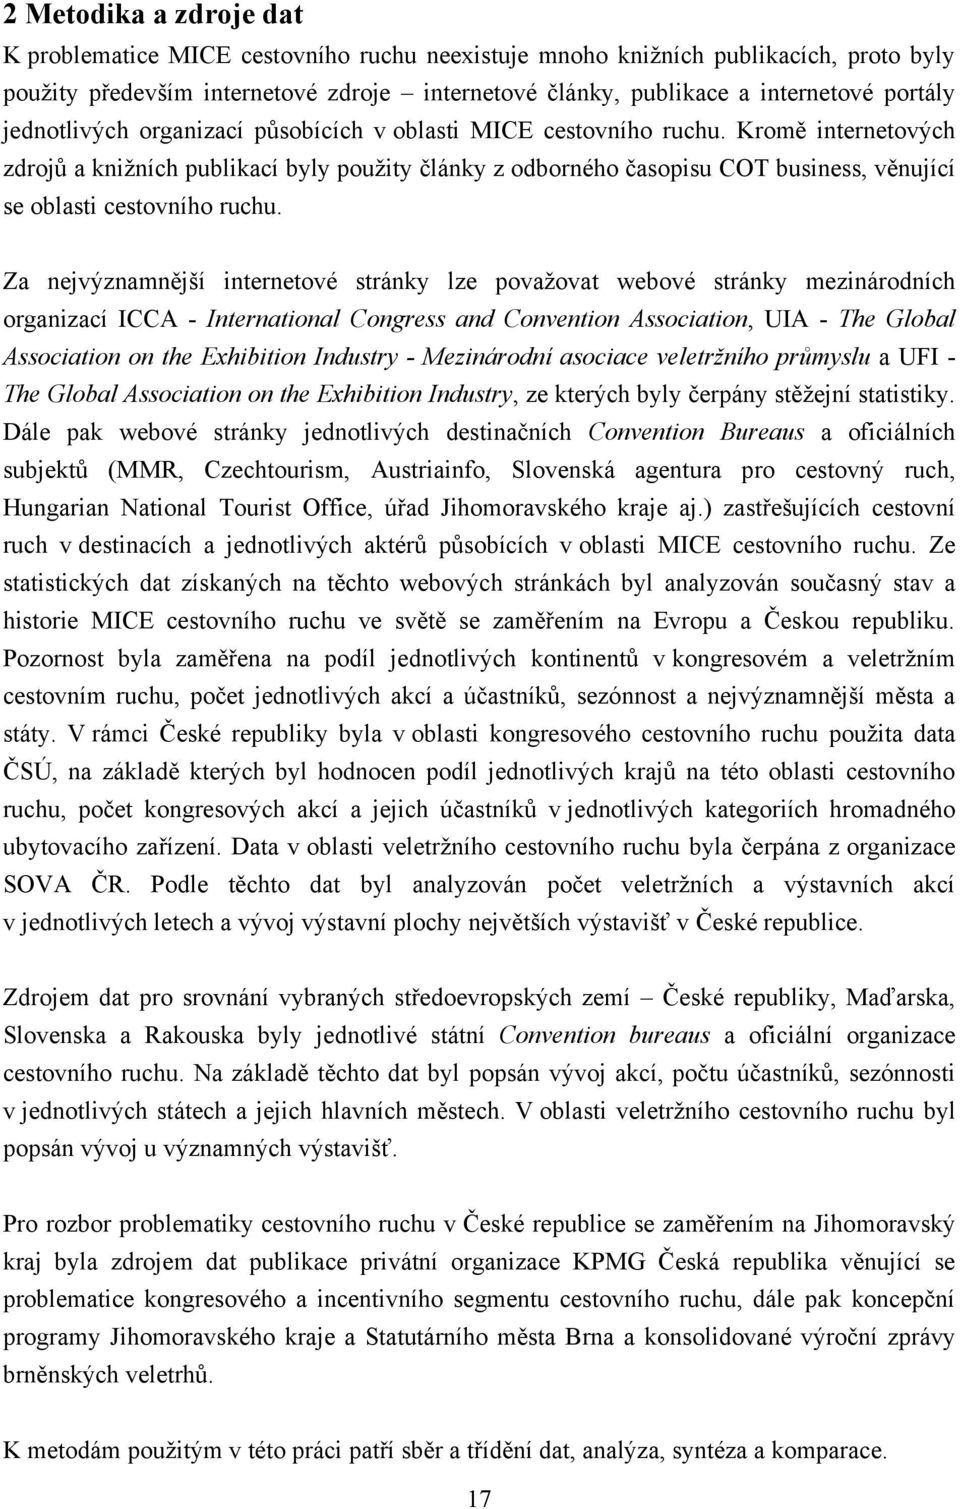 MICE CESTOVNÍ RUCH V ČESKÉ REPUBLICE - PDF Stažení zdarma